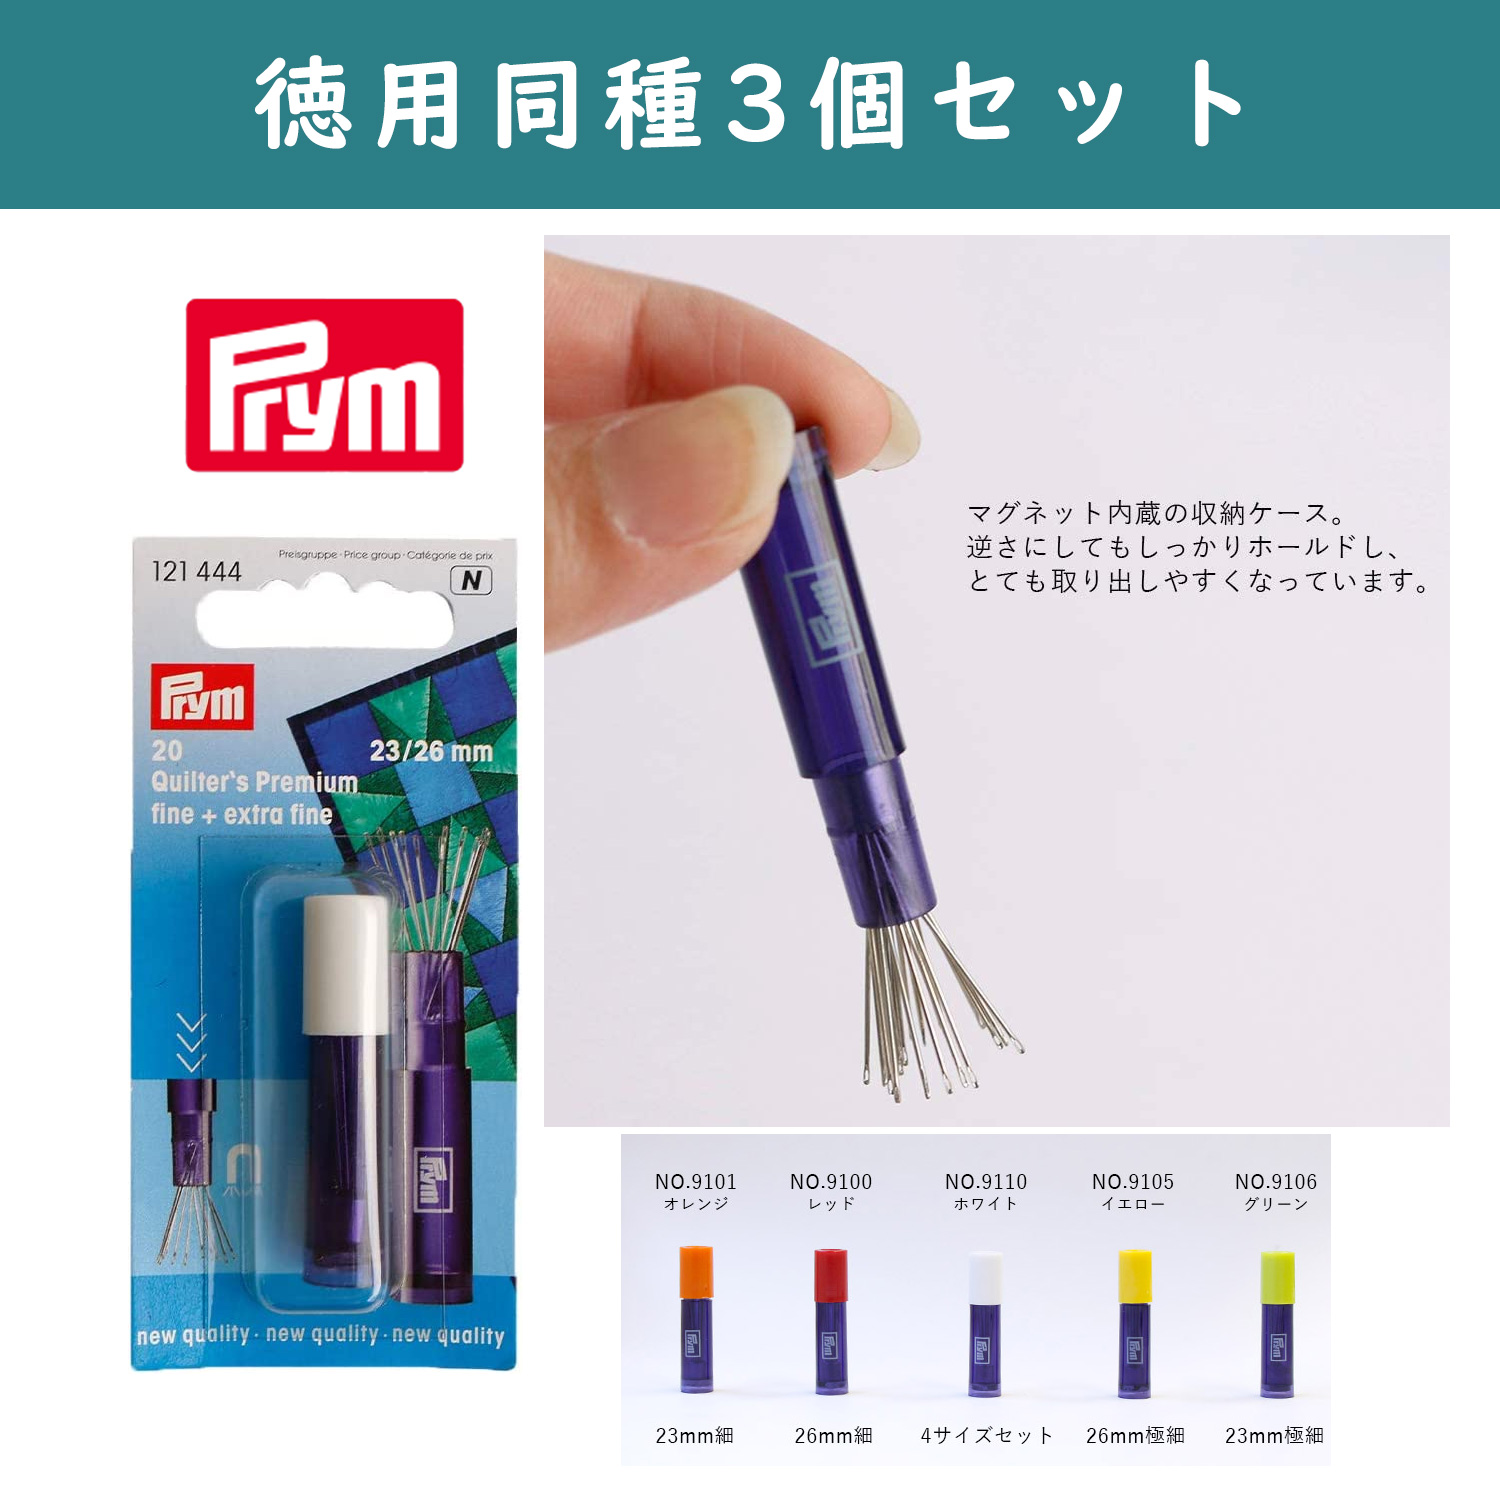 PRM910-3 Prym Premium Quilting Needle with Case 3pcs/set (set)